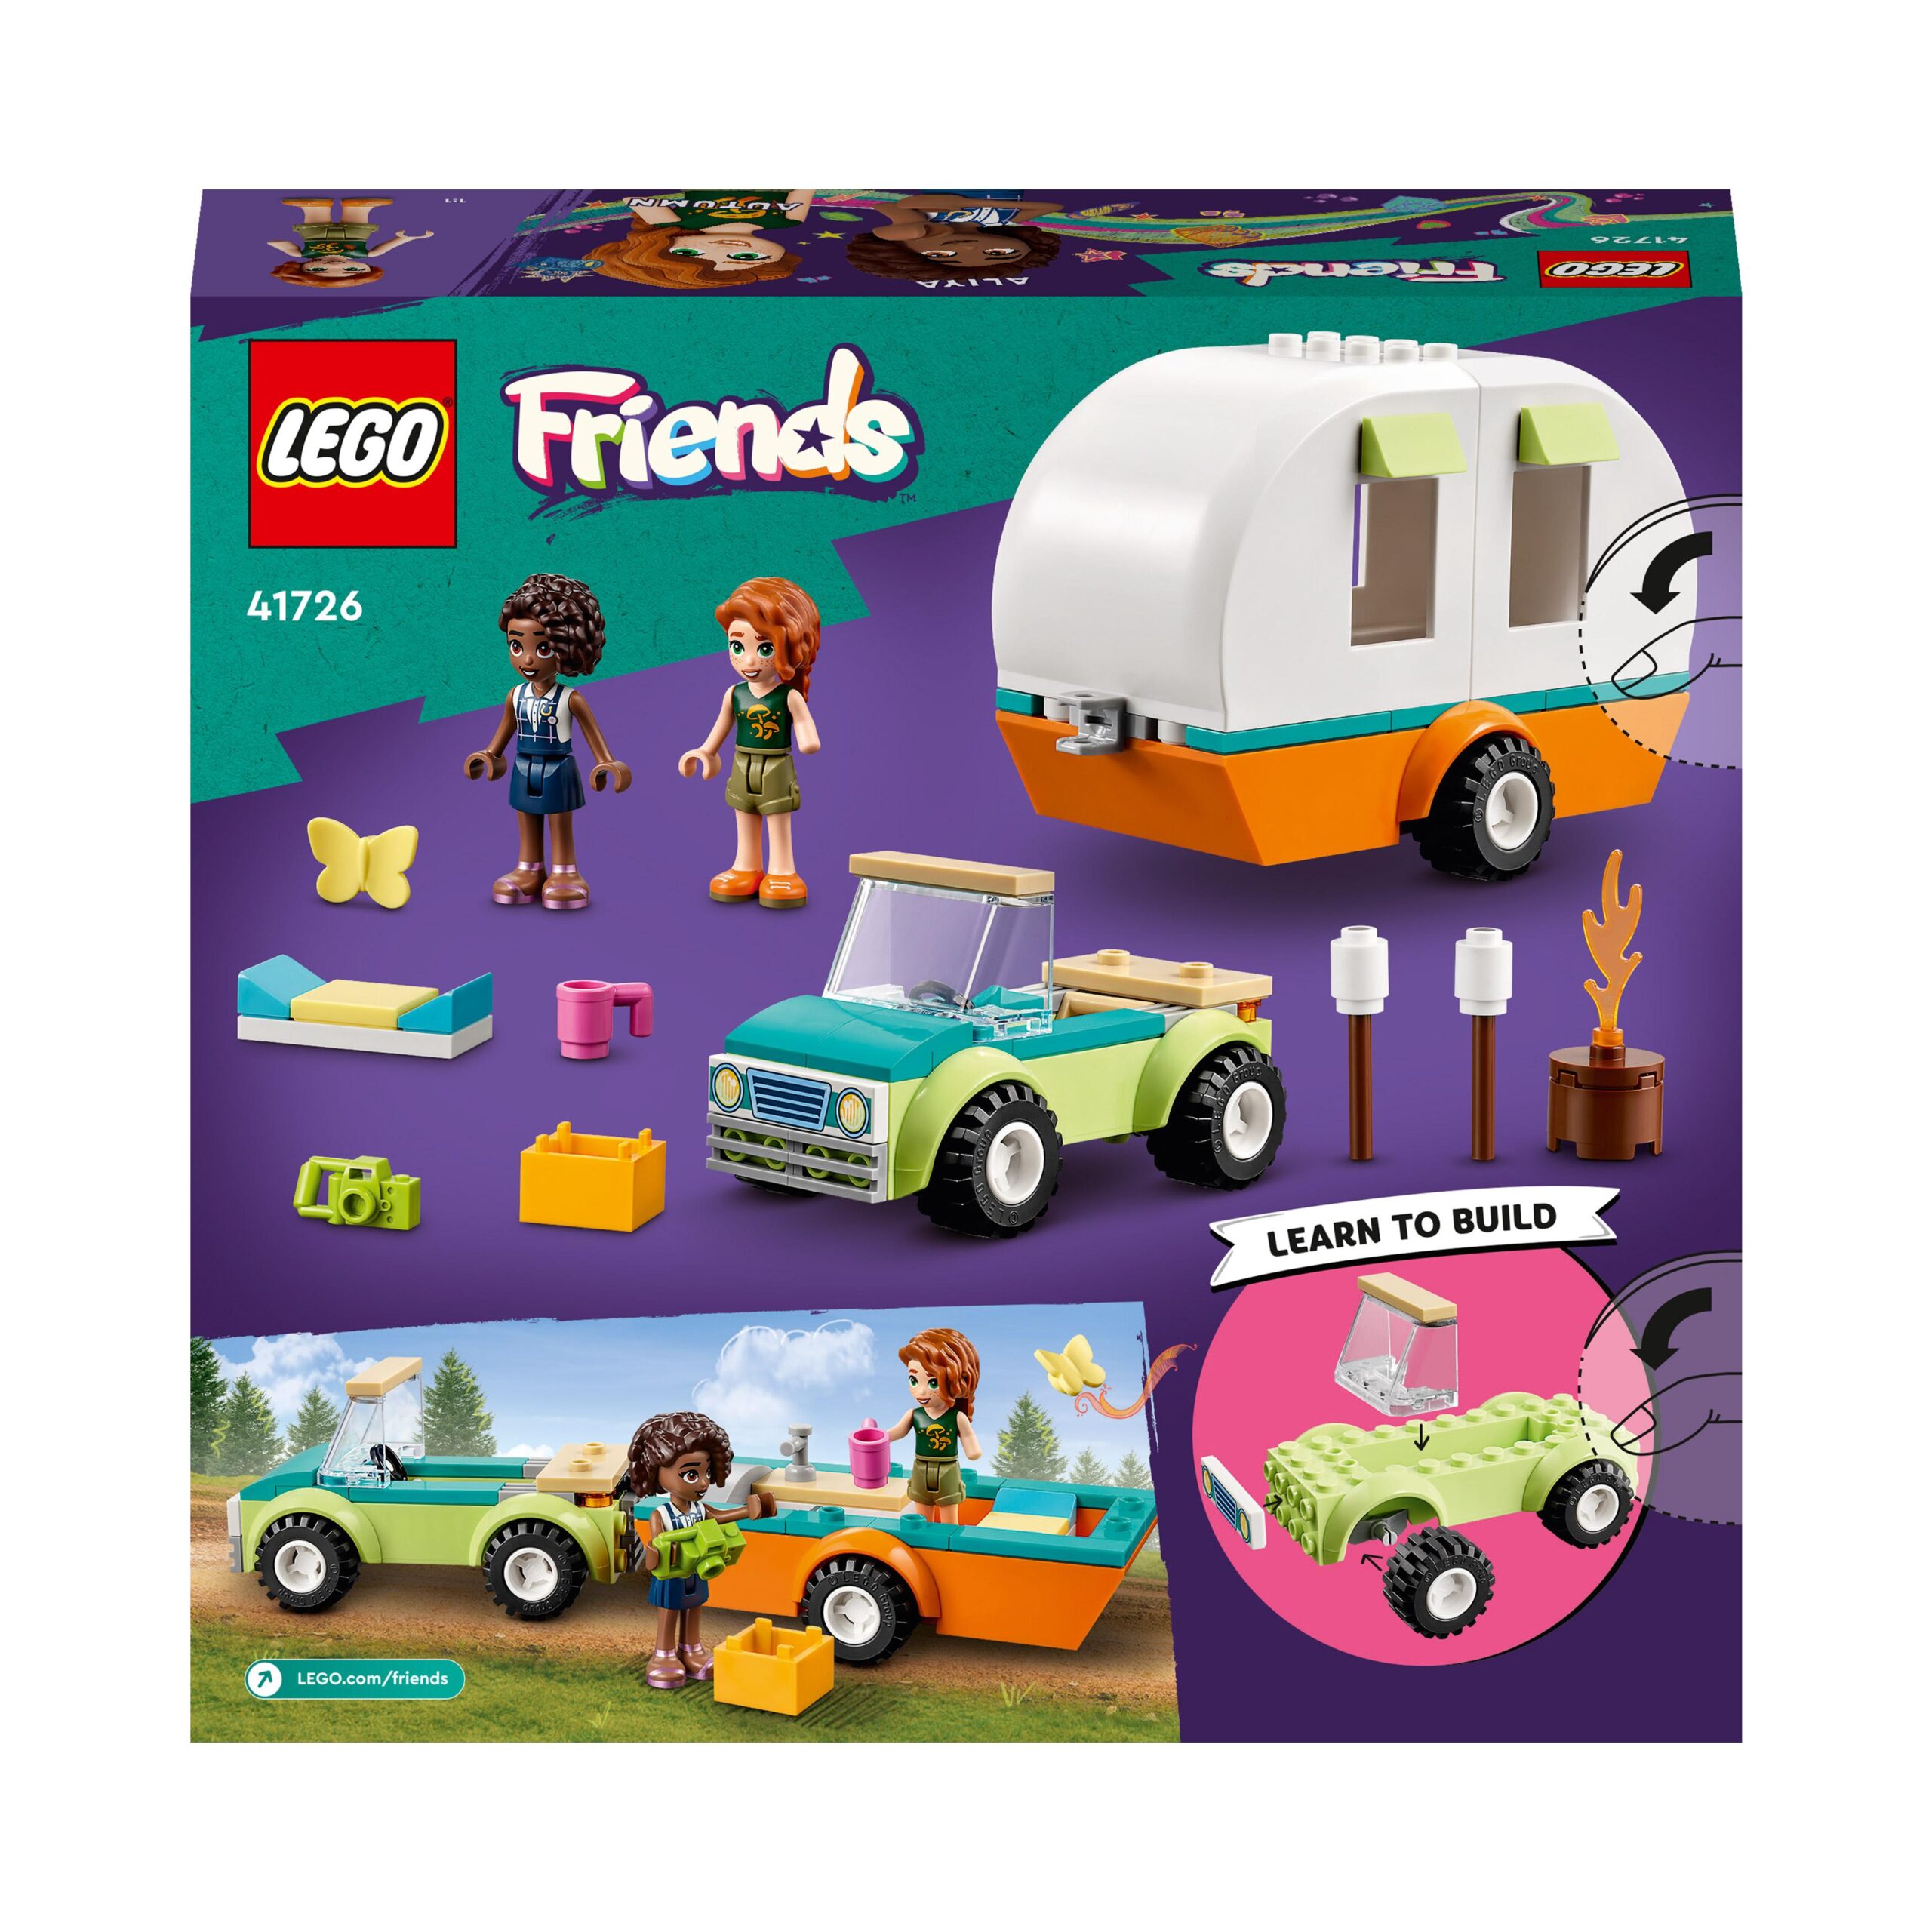 Lego friends 41726 vacanza in campeggio, camper giocattolo e macchina, giochi per bambina e bambino 4+ anni, idea regalo - LEGO FRIENDS